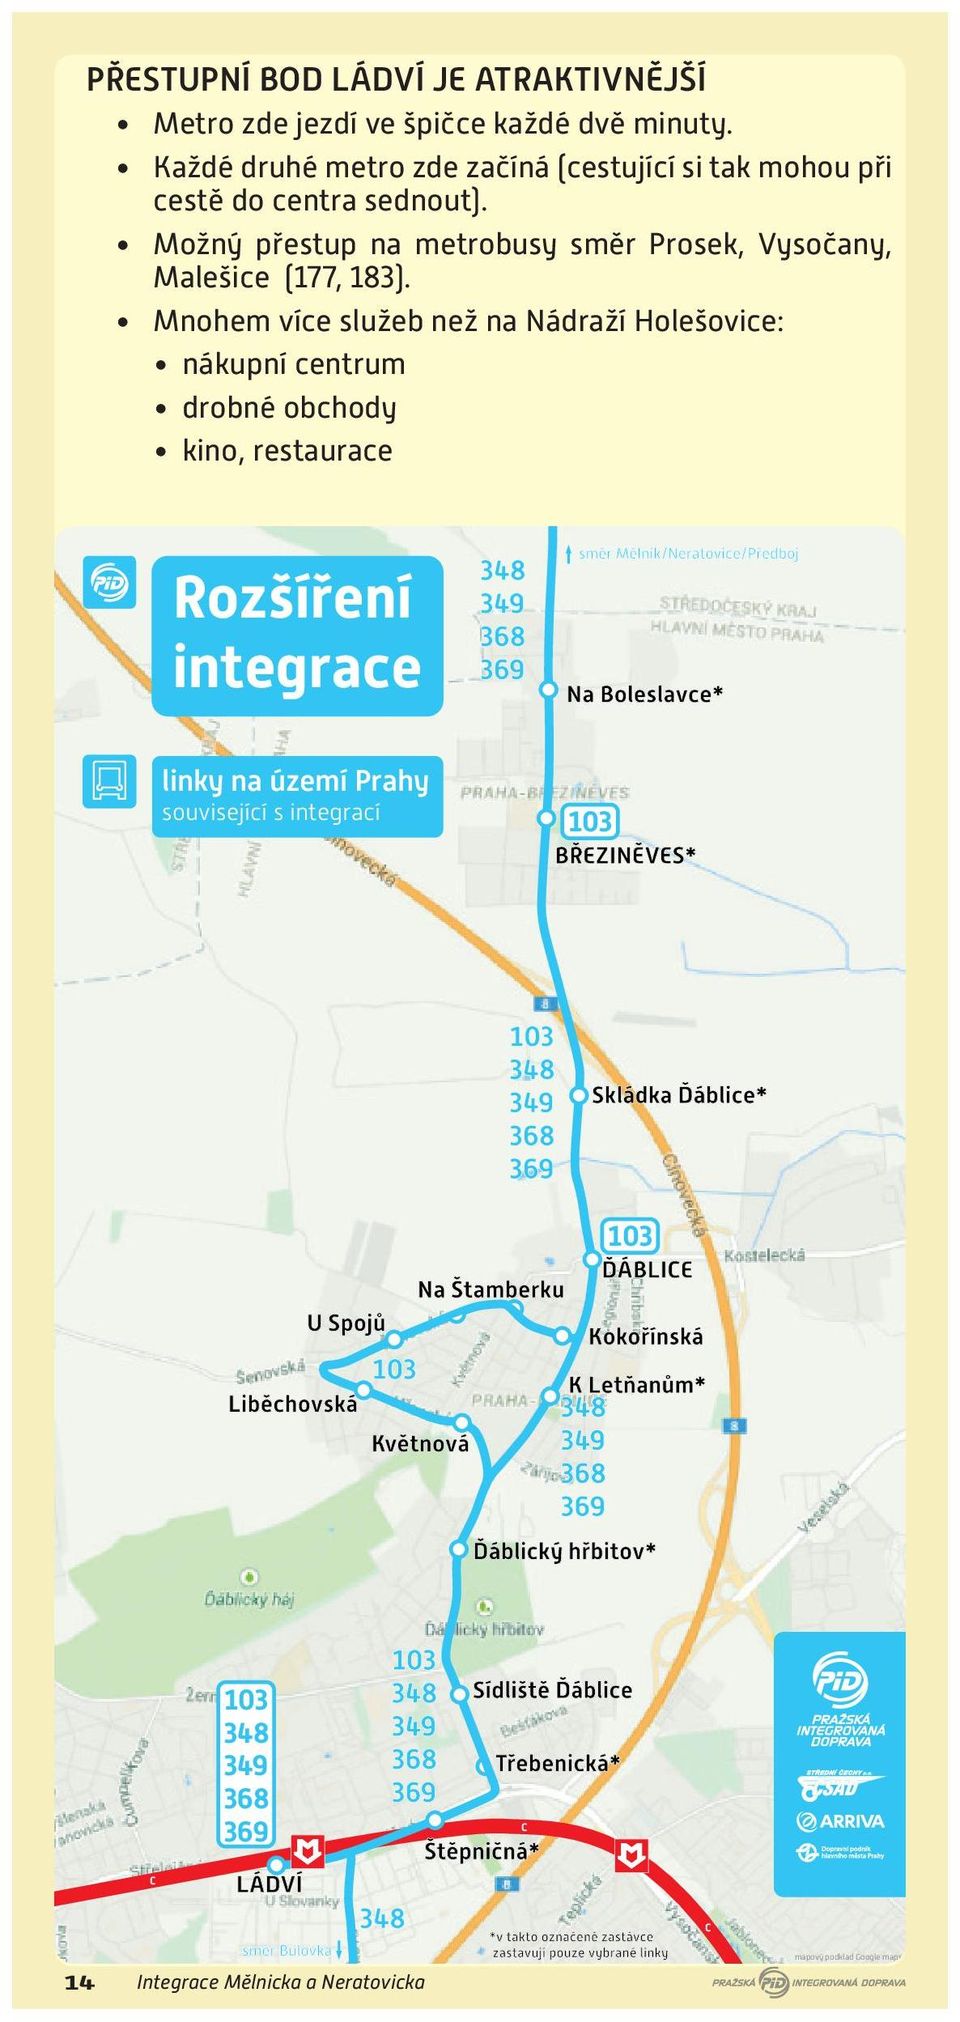 Možný přestup na metrobusy směr Prosek, Vysočany, Malešice (177, 183).